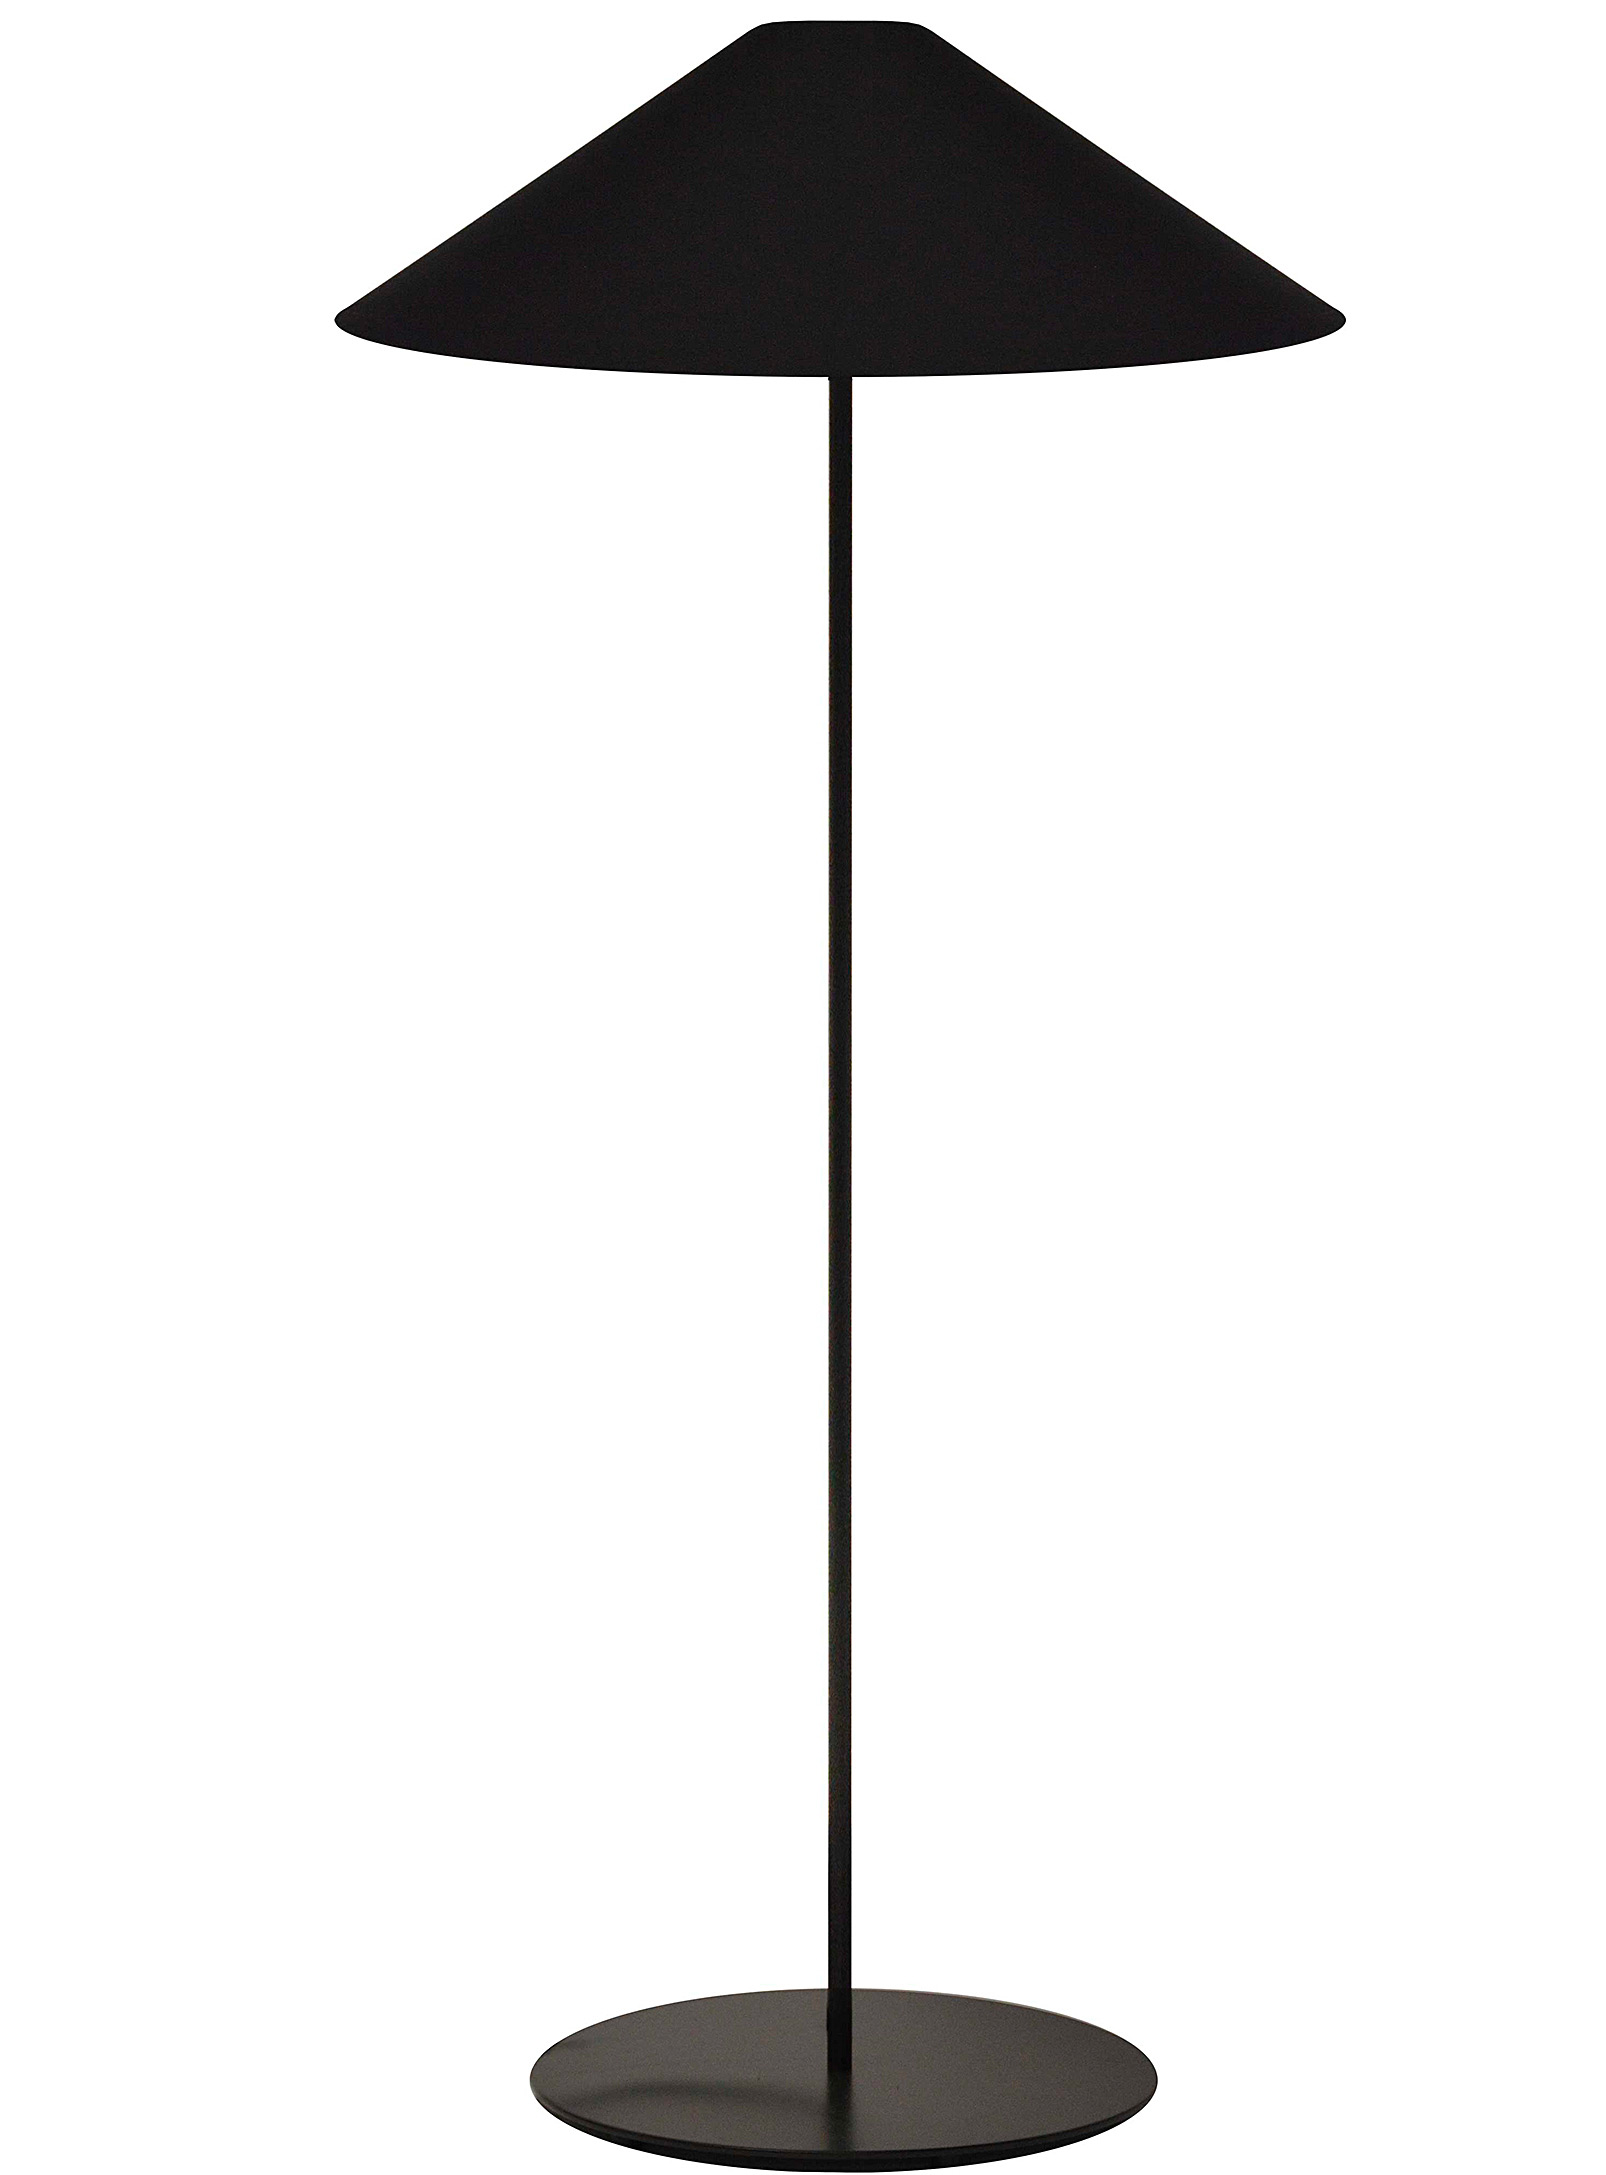 Simons Maison - La lampe sur pied monochrome fuselée